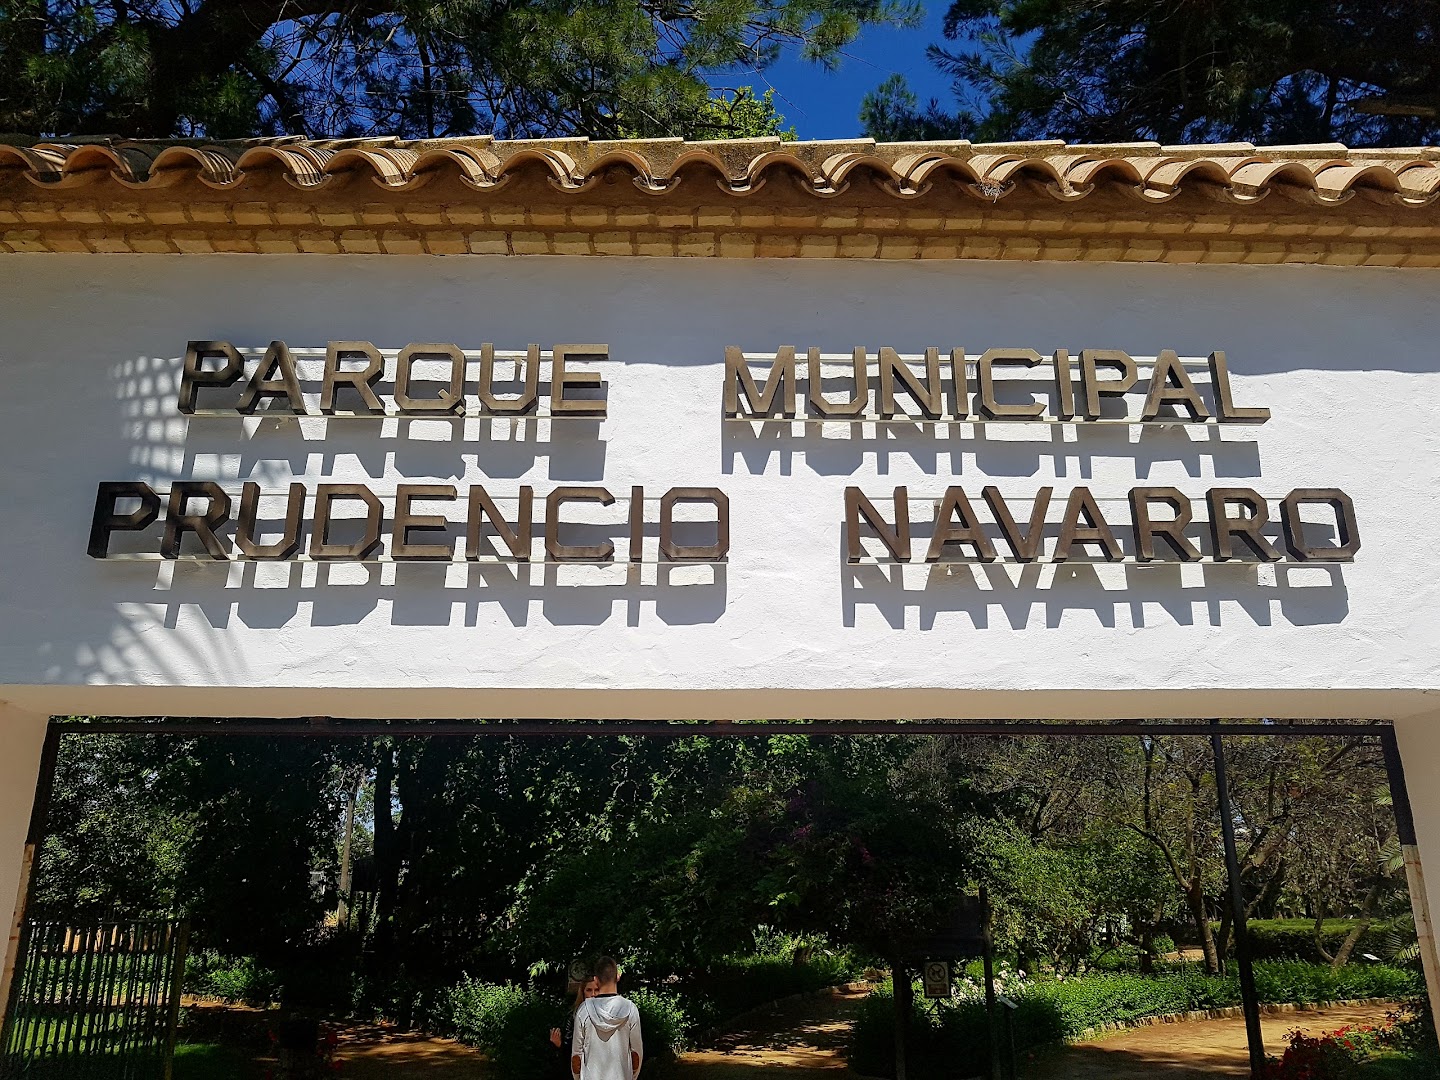 Parque municipal Prudencio Navarro